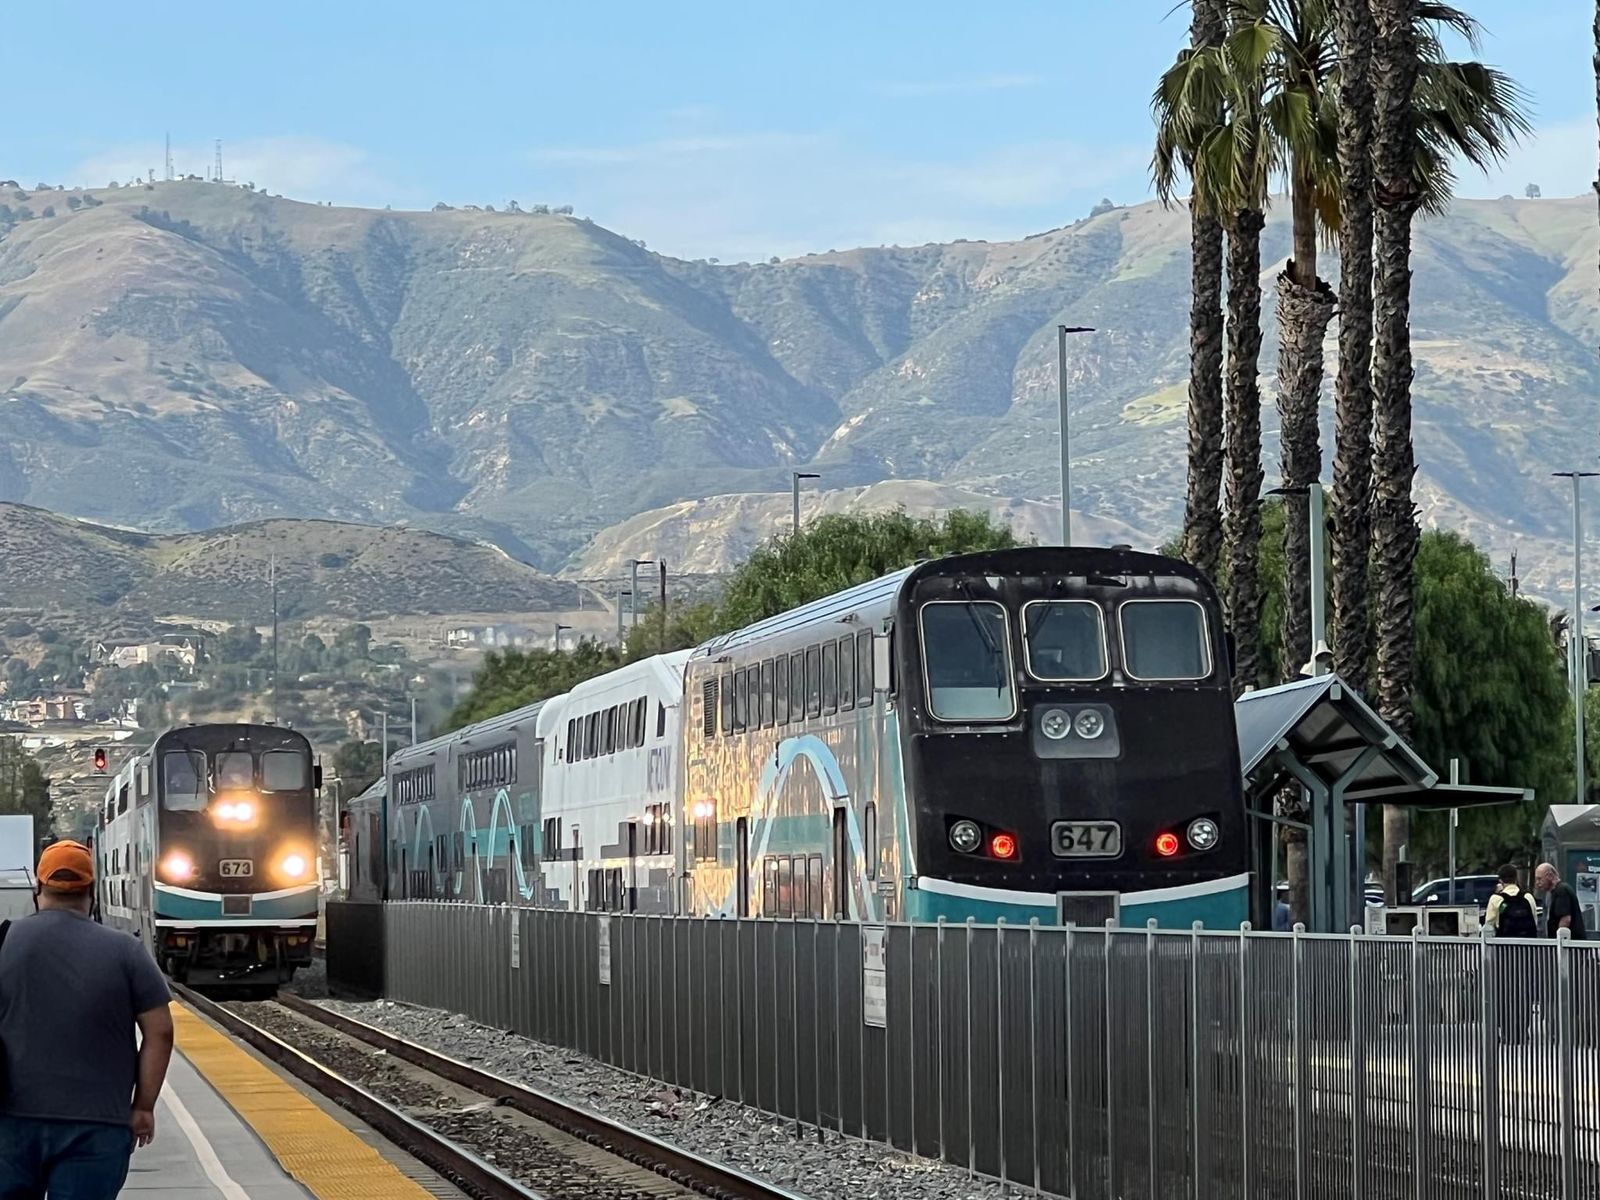 Reanudan servicio ferroviario entre los condados de Orange y San Diego